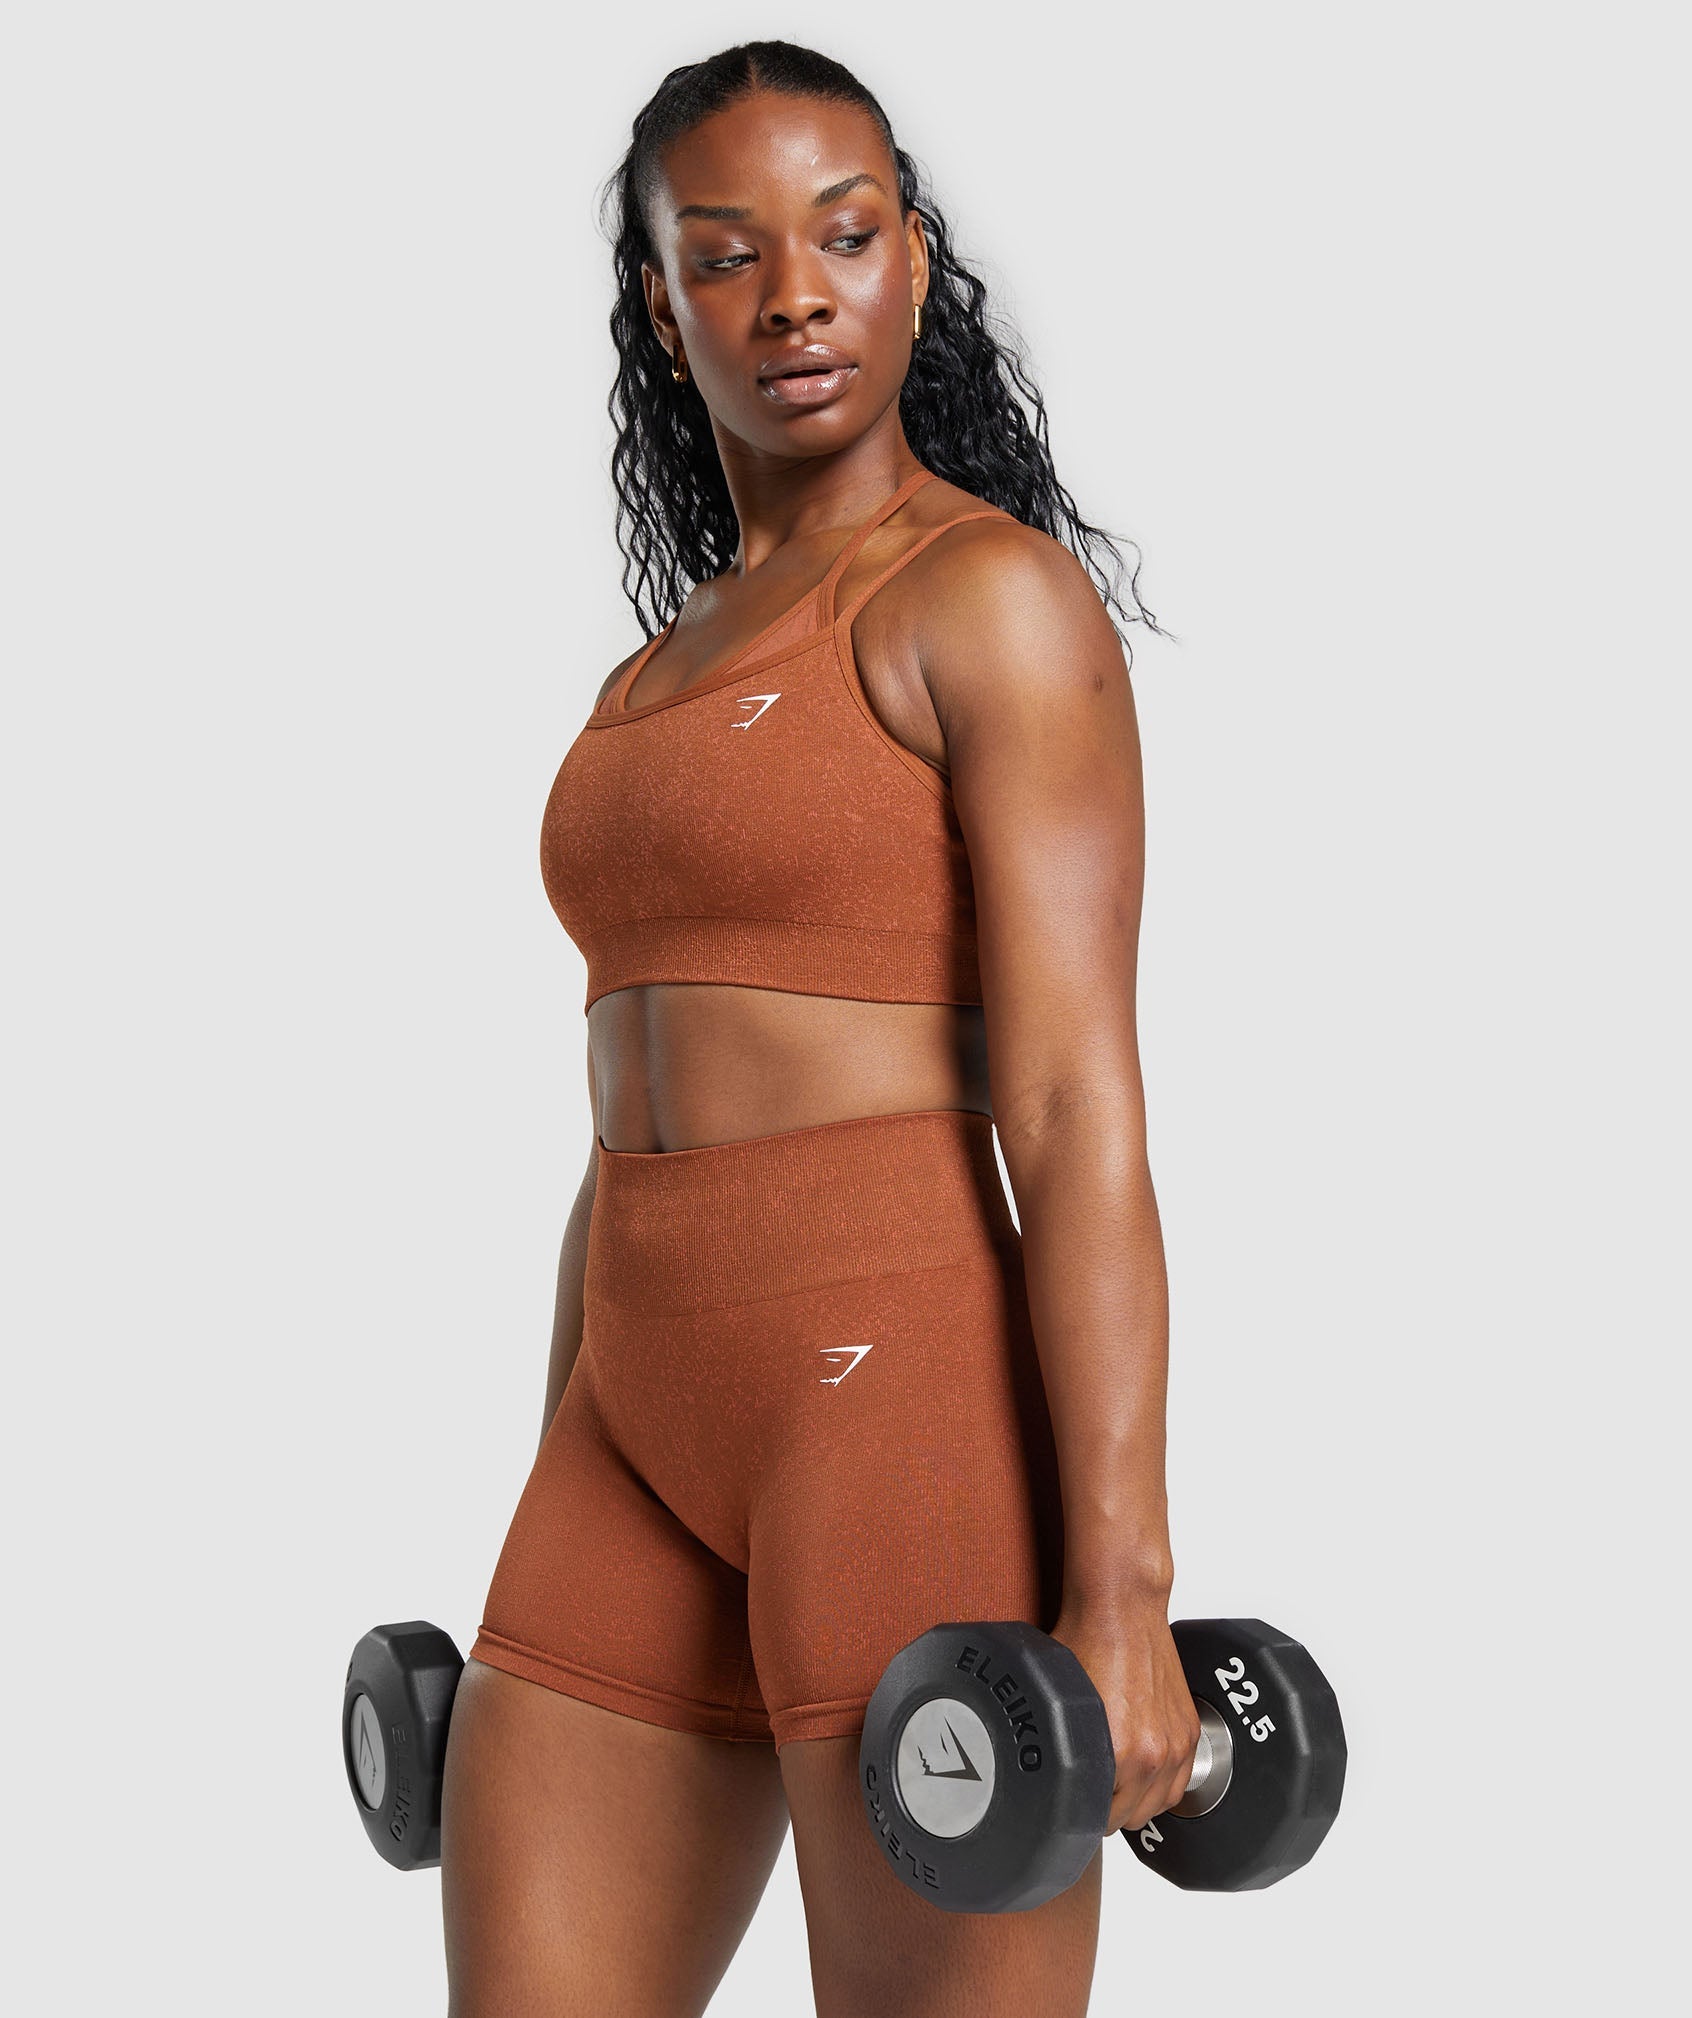 Copper Fit Pro Sports Bra  Pro fitness, Clothes design, Sport bra